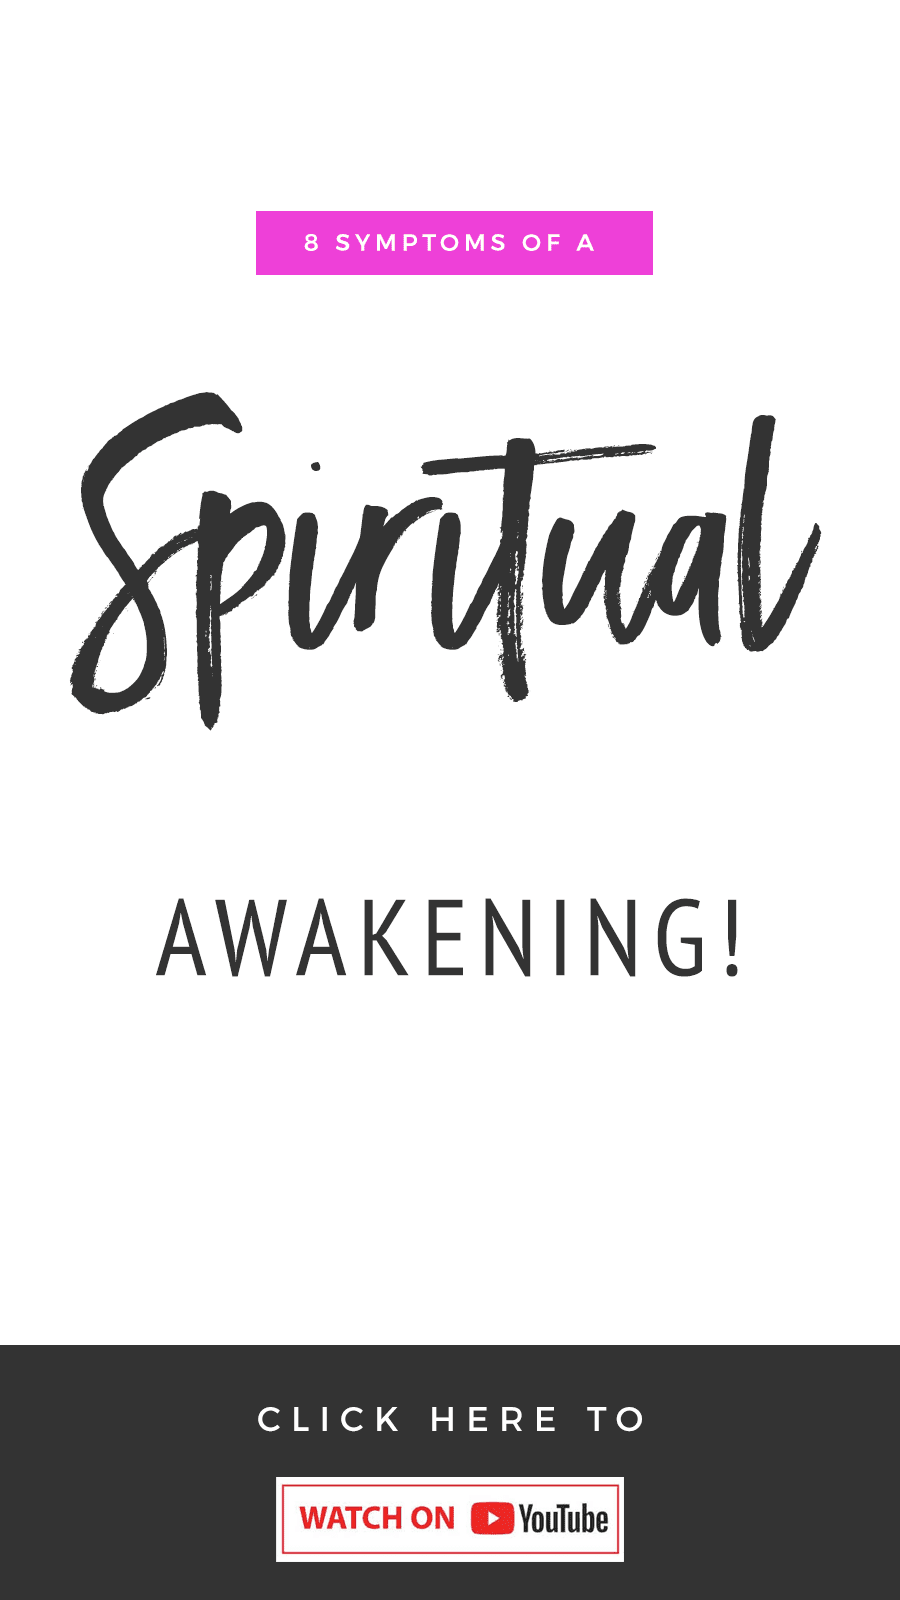 8 Symptoms Of A Spiritual Awakening